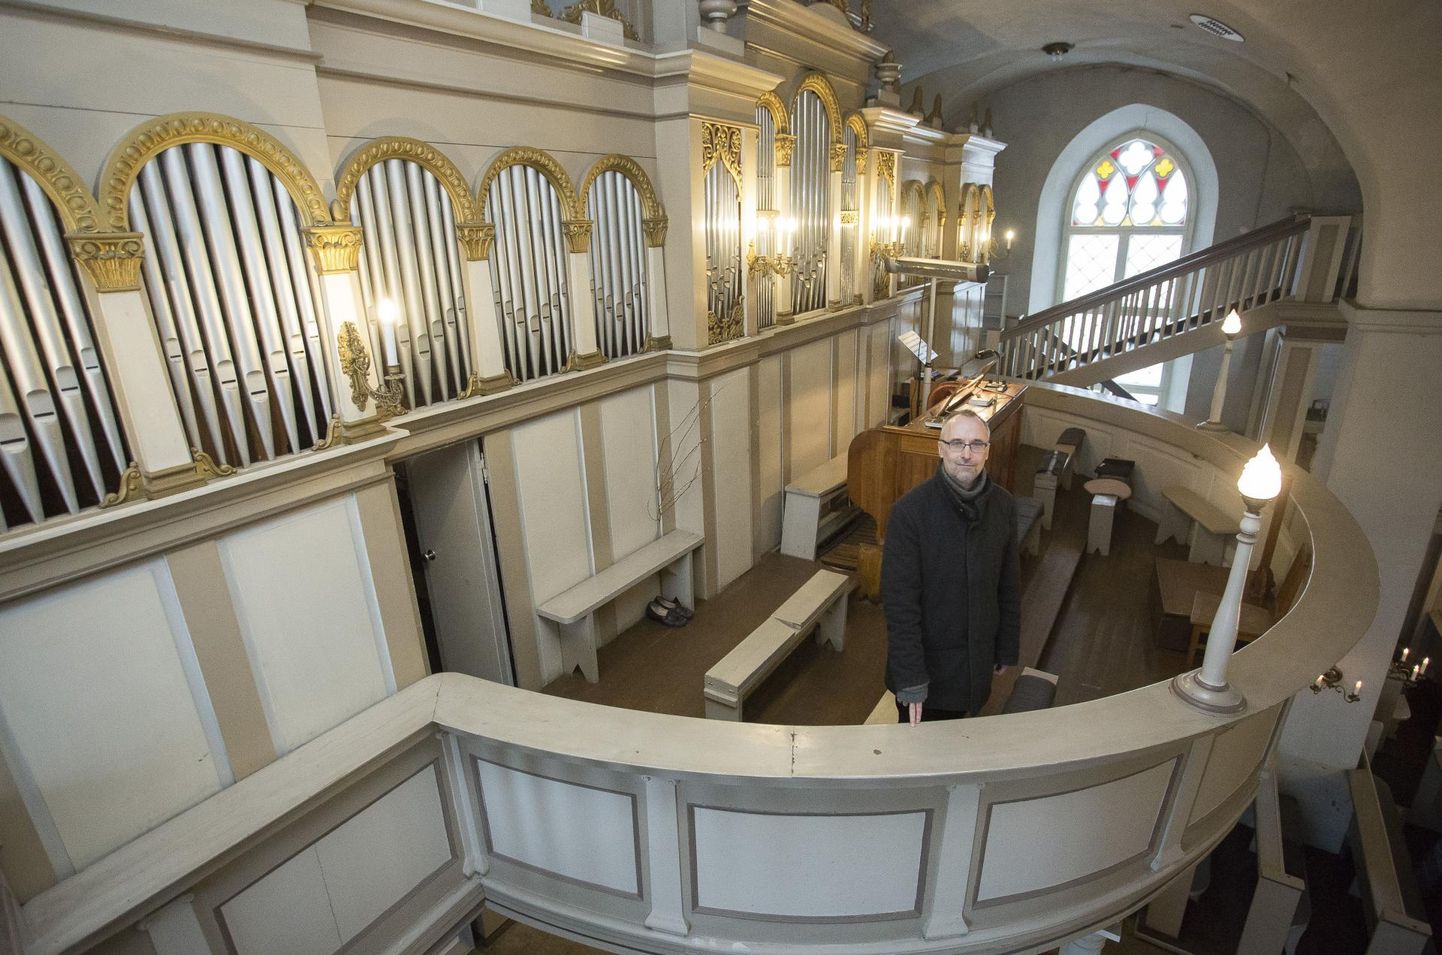 Helilooja Mart Siimer on organistina kirikutes mänginud 30 aastat. Pärast väikest pausi tundis ta soovi taas liturgiaid mängida – viimased aastad on ta pannud kõlama Rakvere Kolmainu kiriku oreli.